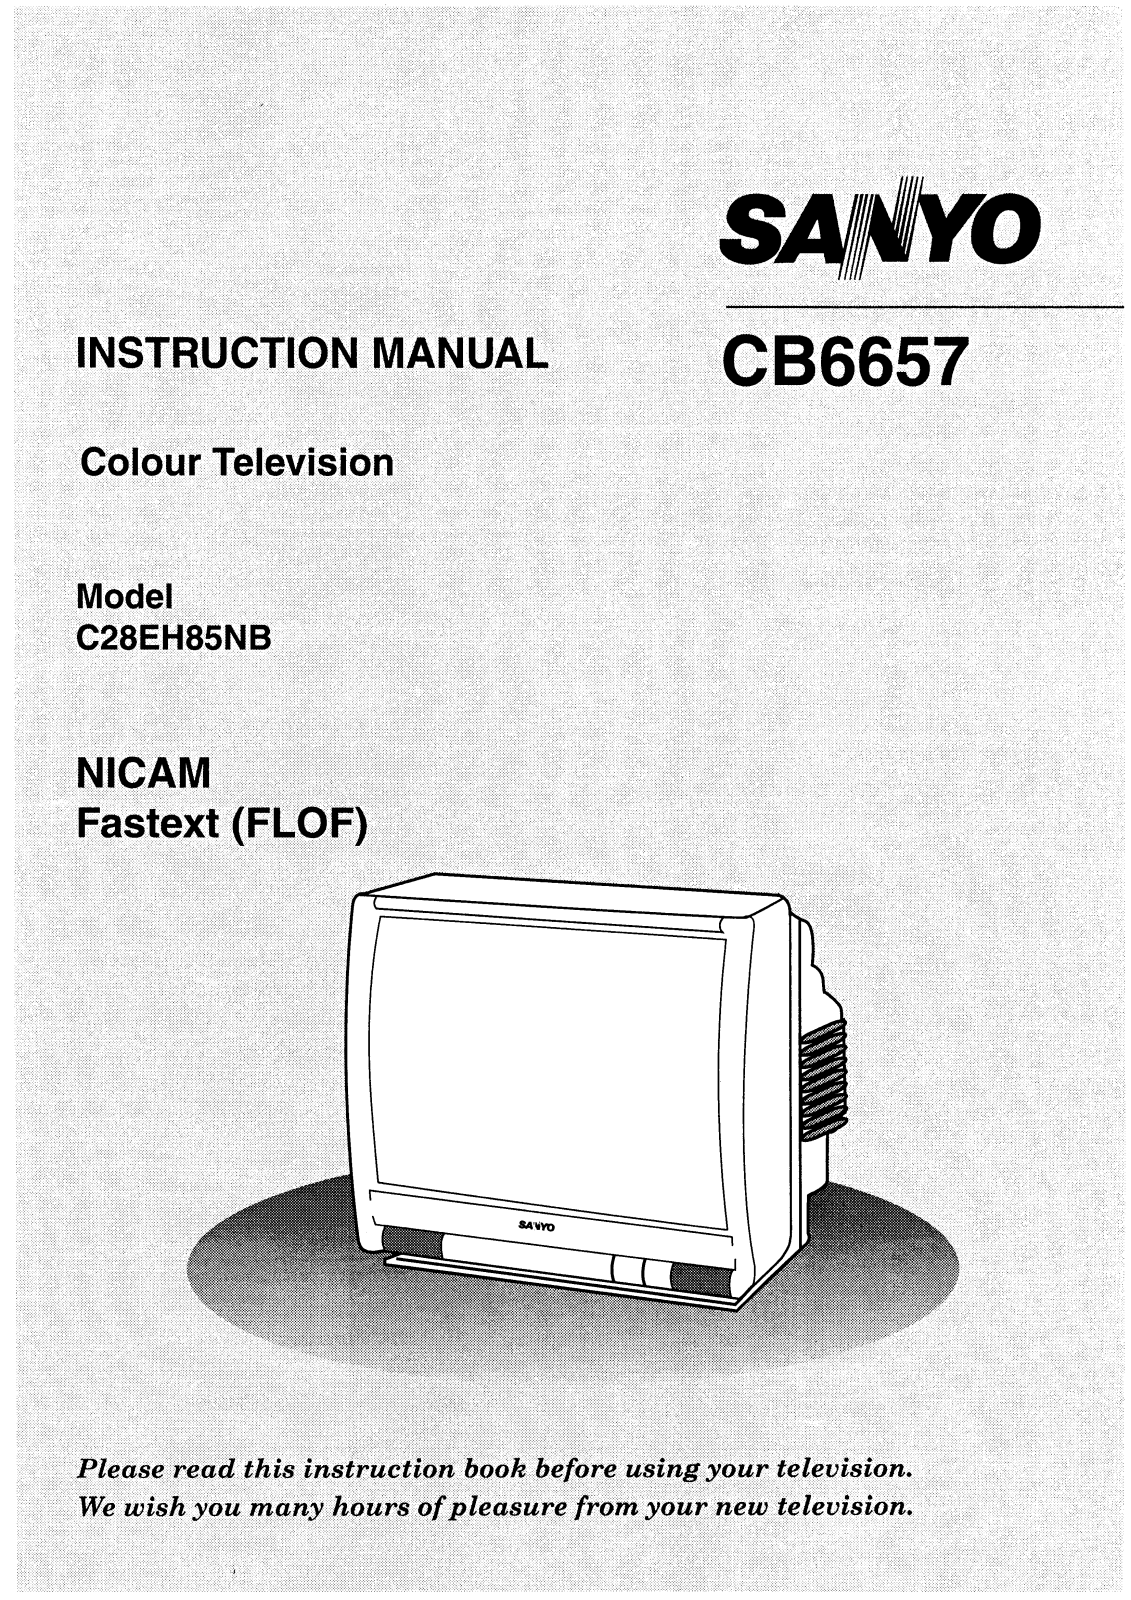 Sanyo CB6657 Instruction Manual